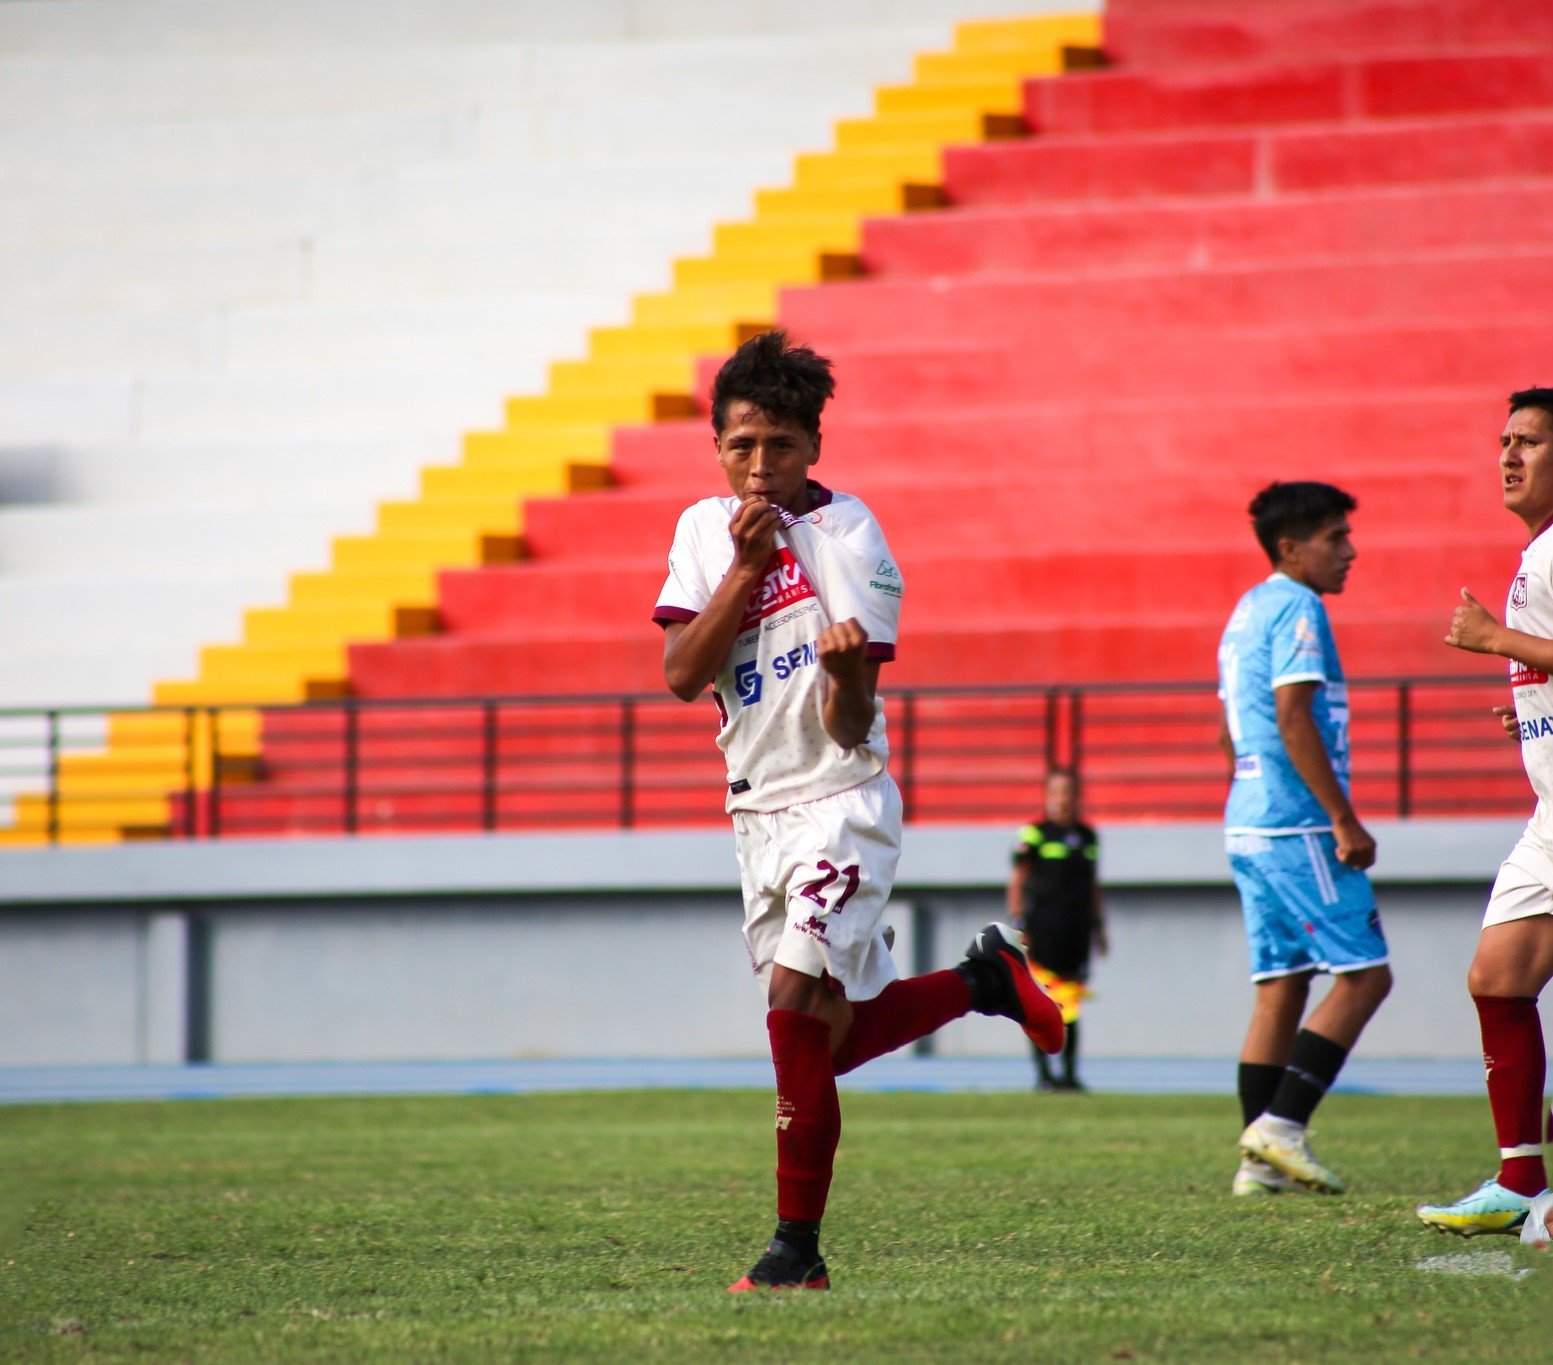 Copa Perú Huánuco: León de Huánuco venció a Pumas FC, mantiene su invicto y está entre los primeros